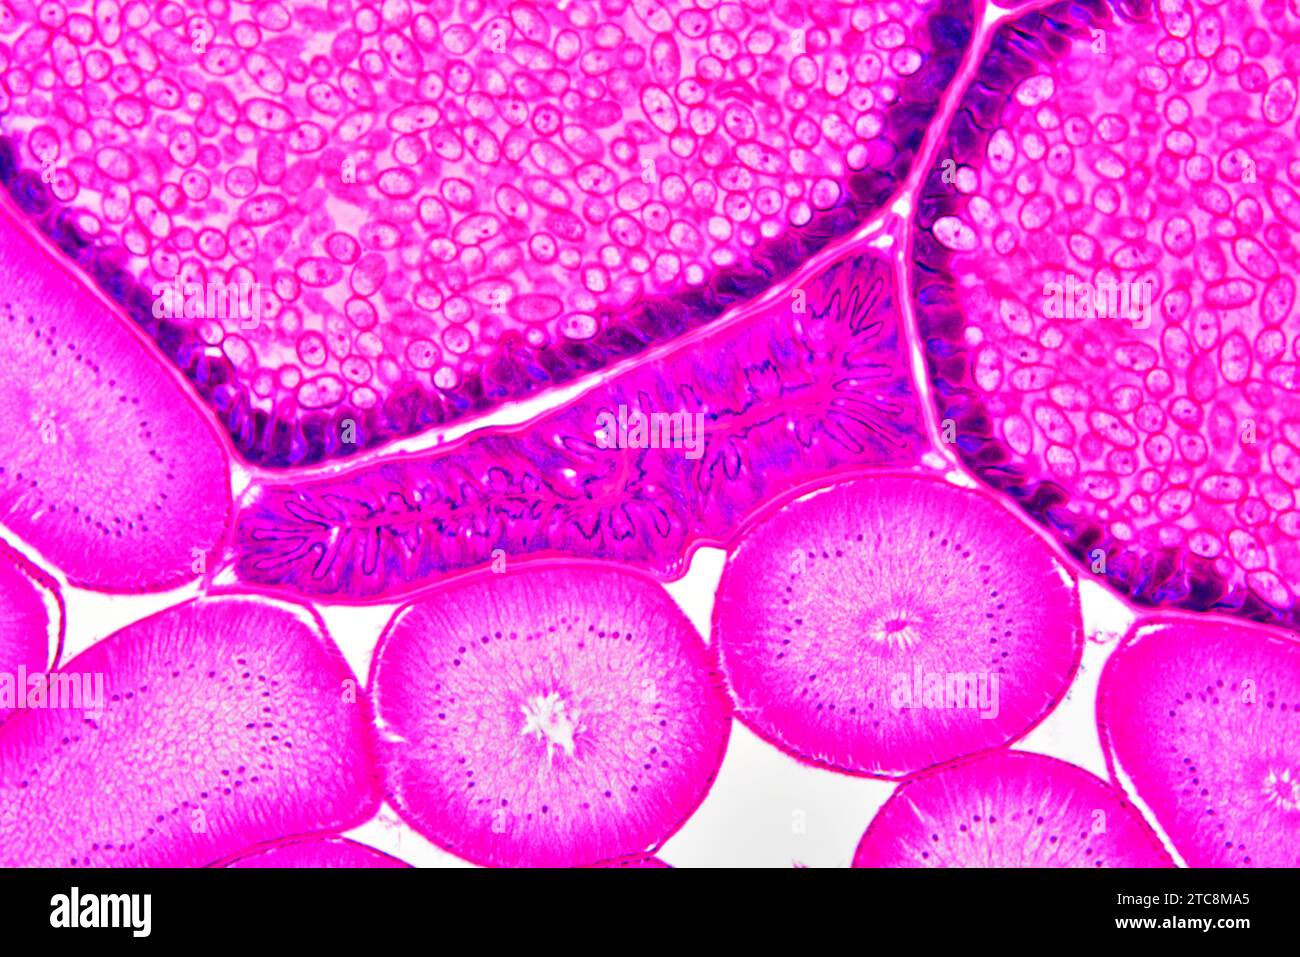 Ascaris lumbricoides femmine che mostrano intestino, ovaie e utero con uova. Microscopio leggero X150 con larghezza di 10 cm. Foto Stock